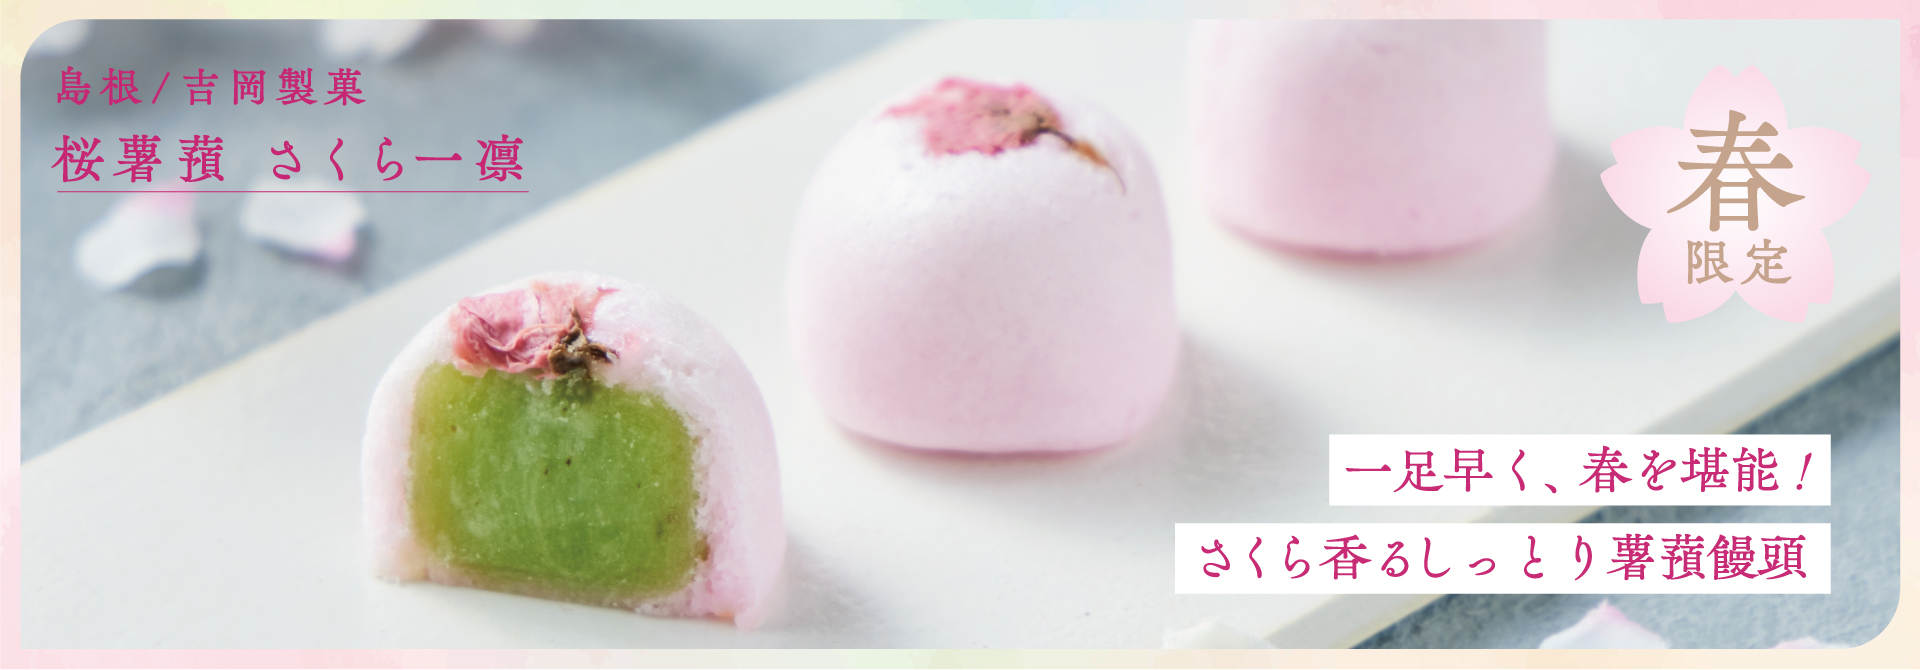 【春の訪れ】吉岡製菓の桜薯蕷　さくら一凛